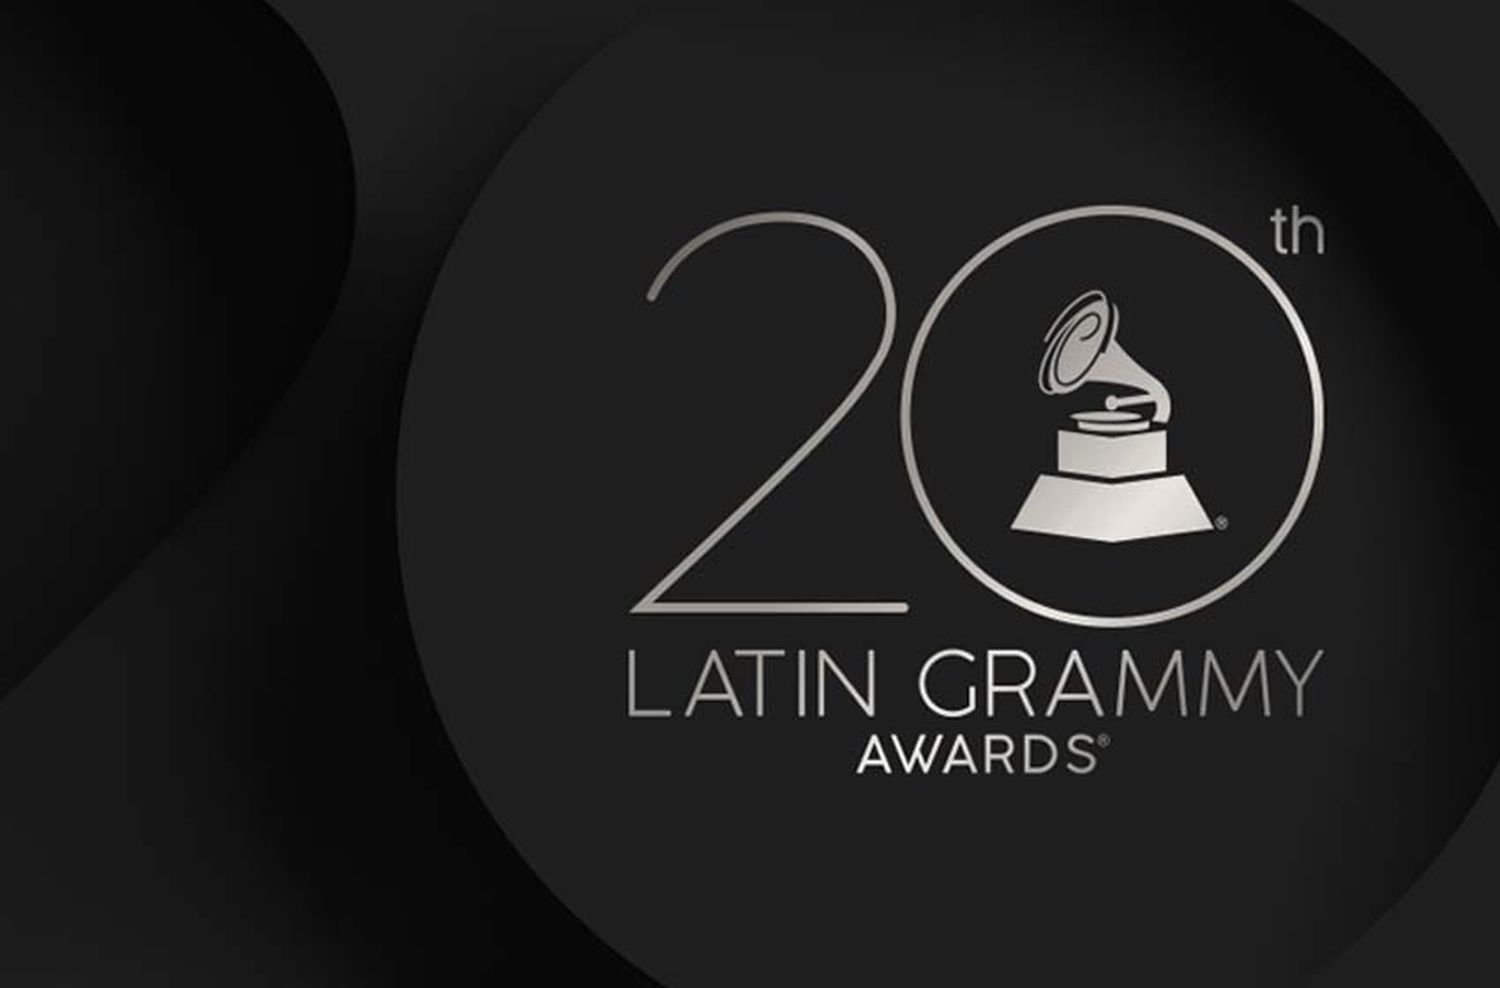 Las principales nominaciones de los Grammys latinos 2019